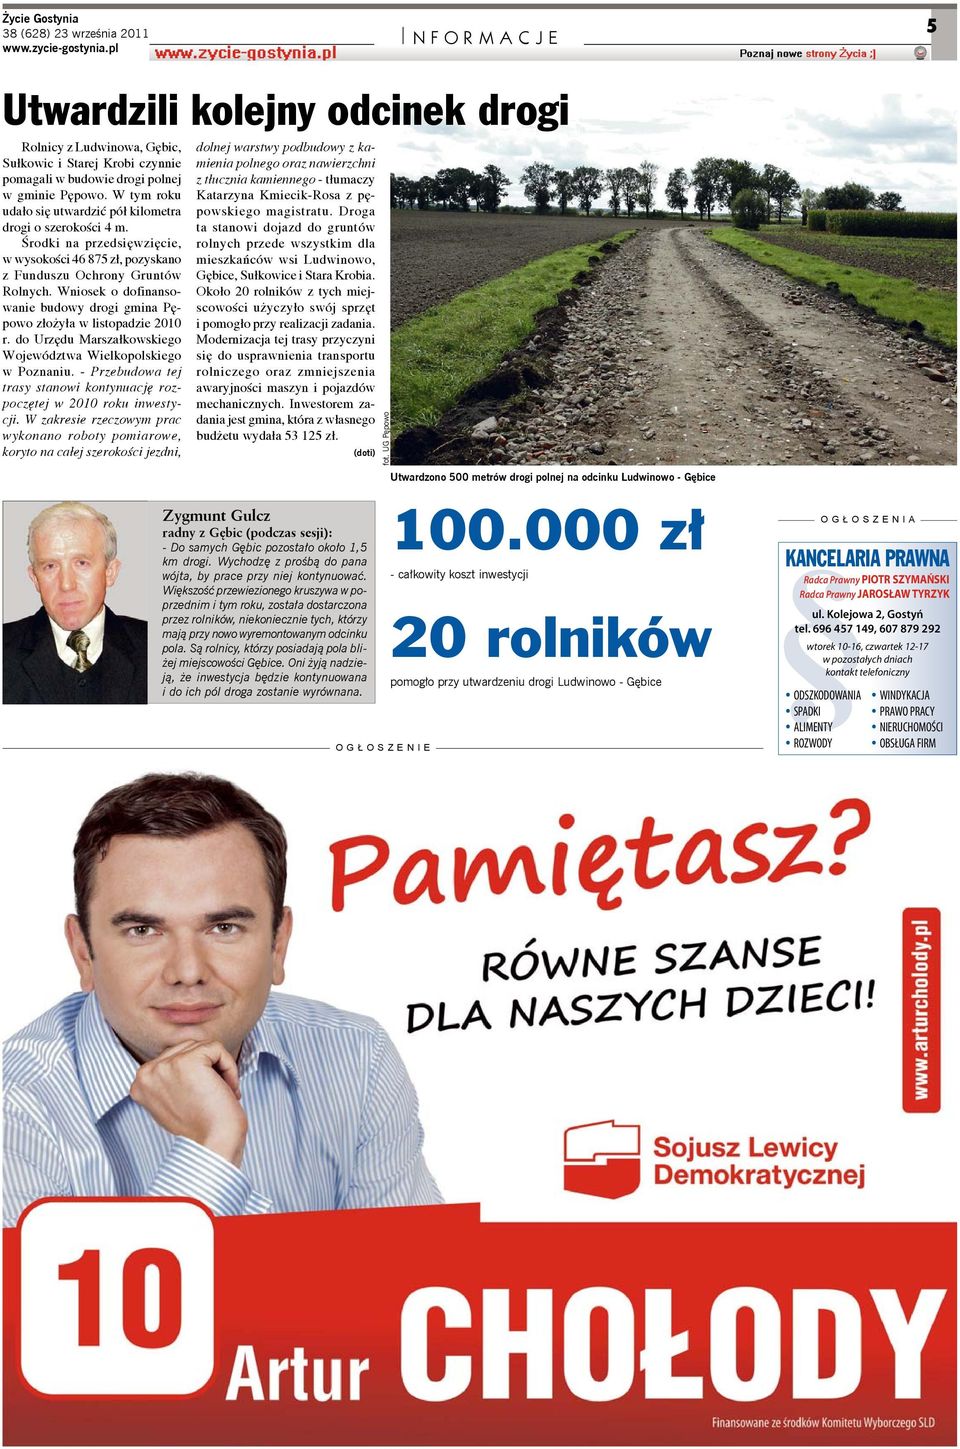 Wniosek o dofinansowanie budowy drogi gmina Pępowo złożyła w listopadzie 2010 r. do Urzędu Marszałkowskiego Województwa Wielkopolskiego w Poznaniu.